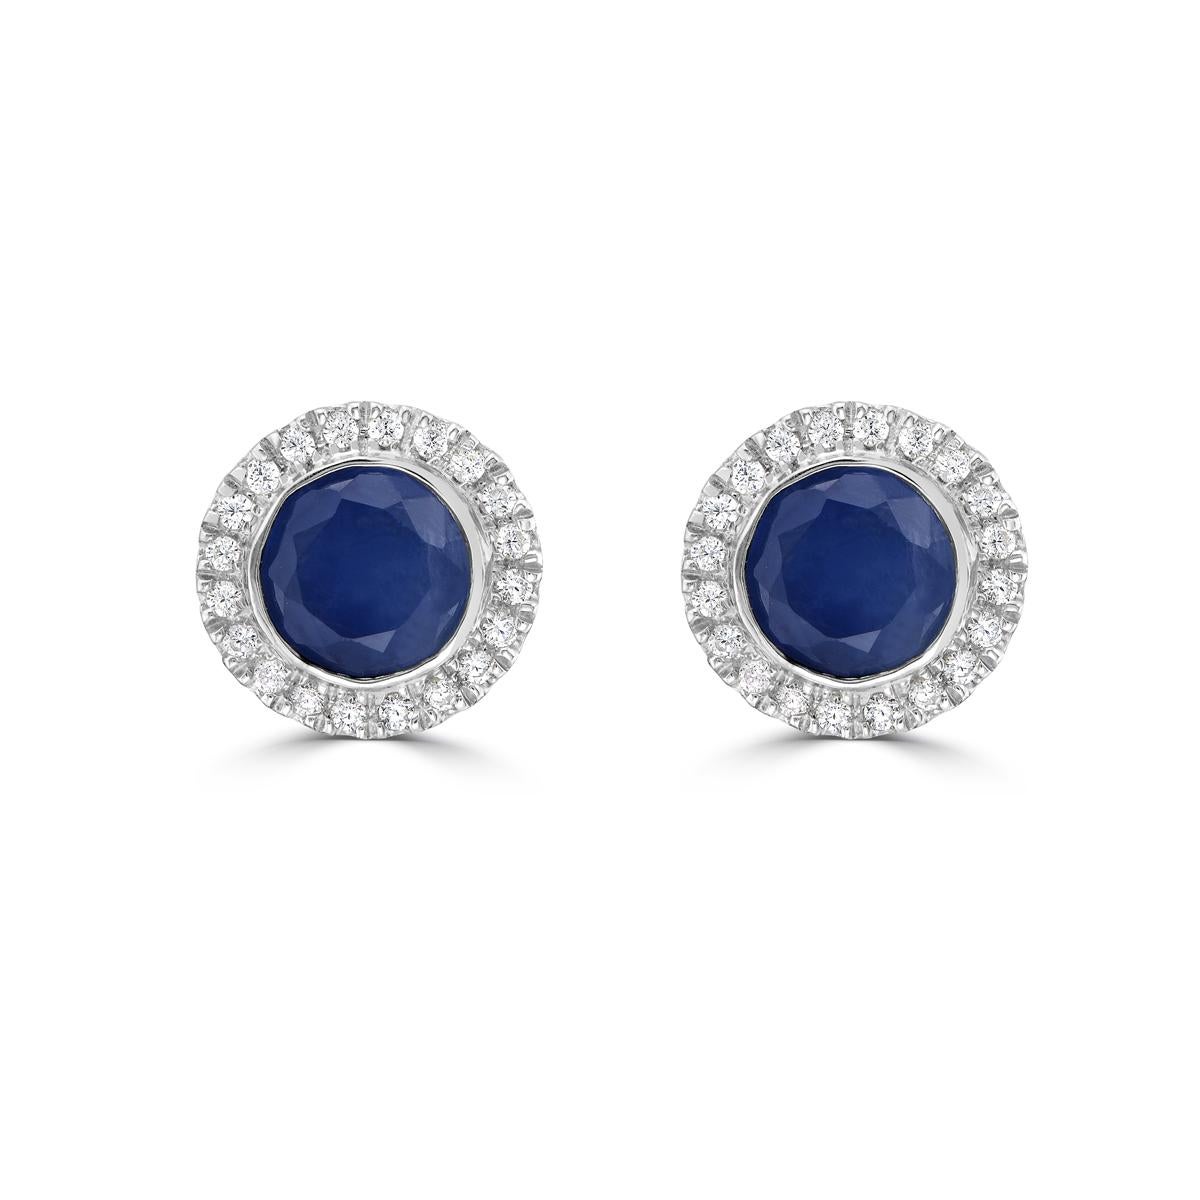 Gönnen Sie sich Luxus mit unseren Halo-Ohrsteckern mit blauem Saphir und Diamant aus 14 Karat Weißgold. Mit ihren atemberaubenden runden blauen Saphiren strahlen diese Saphir-Ohrstecker Raffinesse und Exklusivität aus. Das schillernde Halo-Design